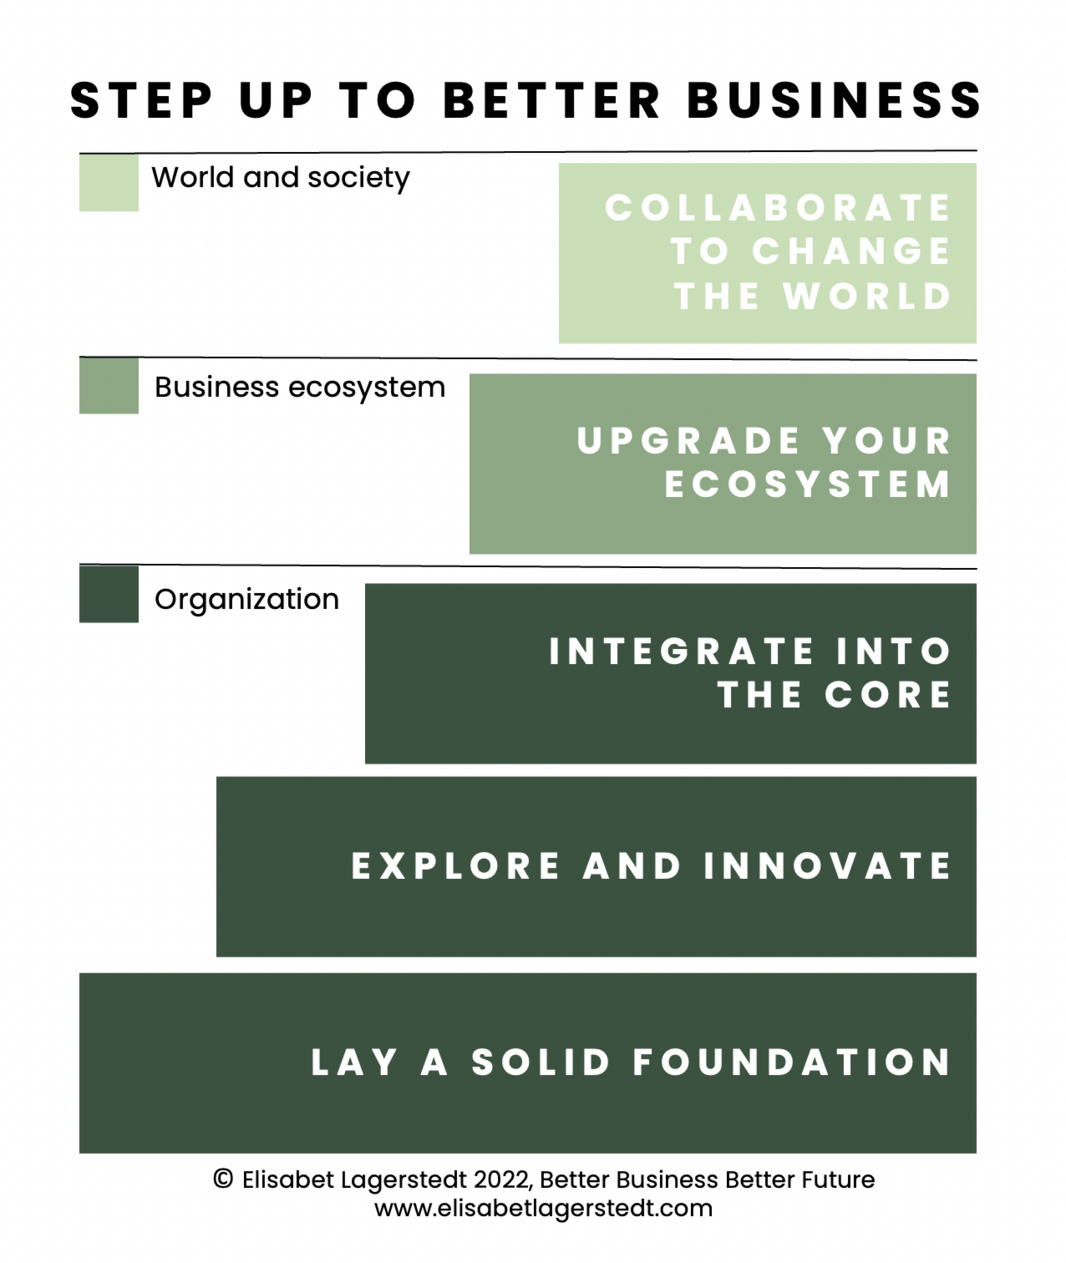 Step Up to Better Business Framework Copyr. Elisabet Lagerstedt 2022